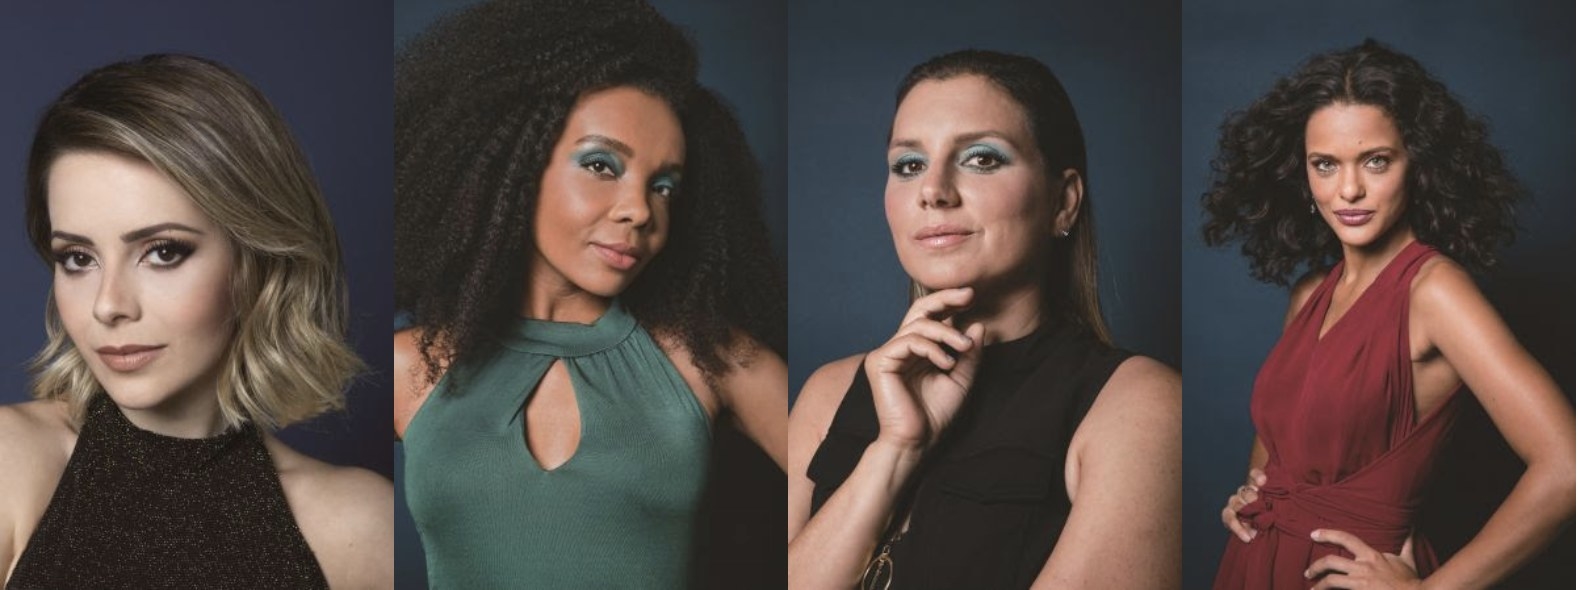 Imagem da campanha "Olhos nos Olhos: Cada Mulher Uma História" mostra Sandy, Maya Gabeira, Thelma Assis e Thainá Duarte.